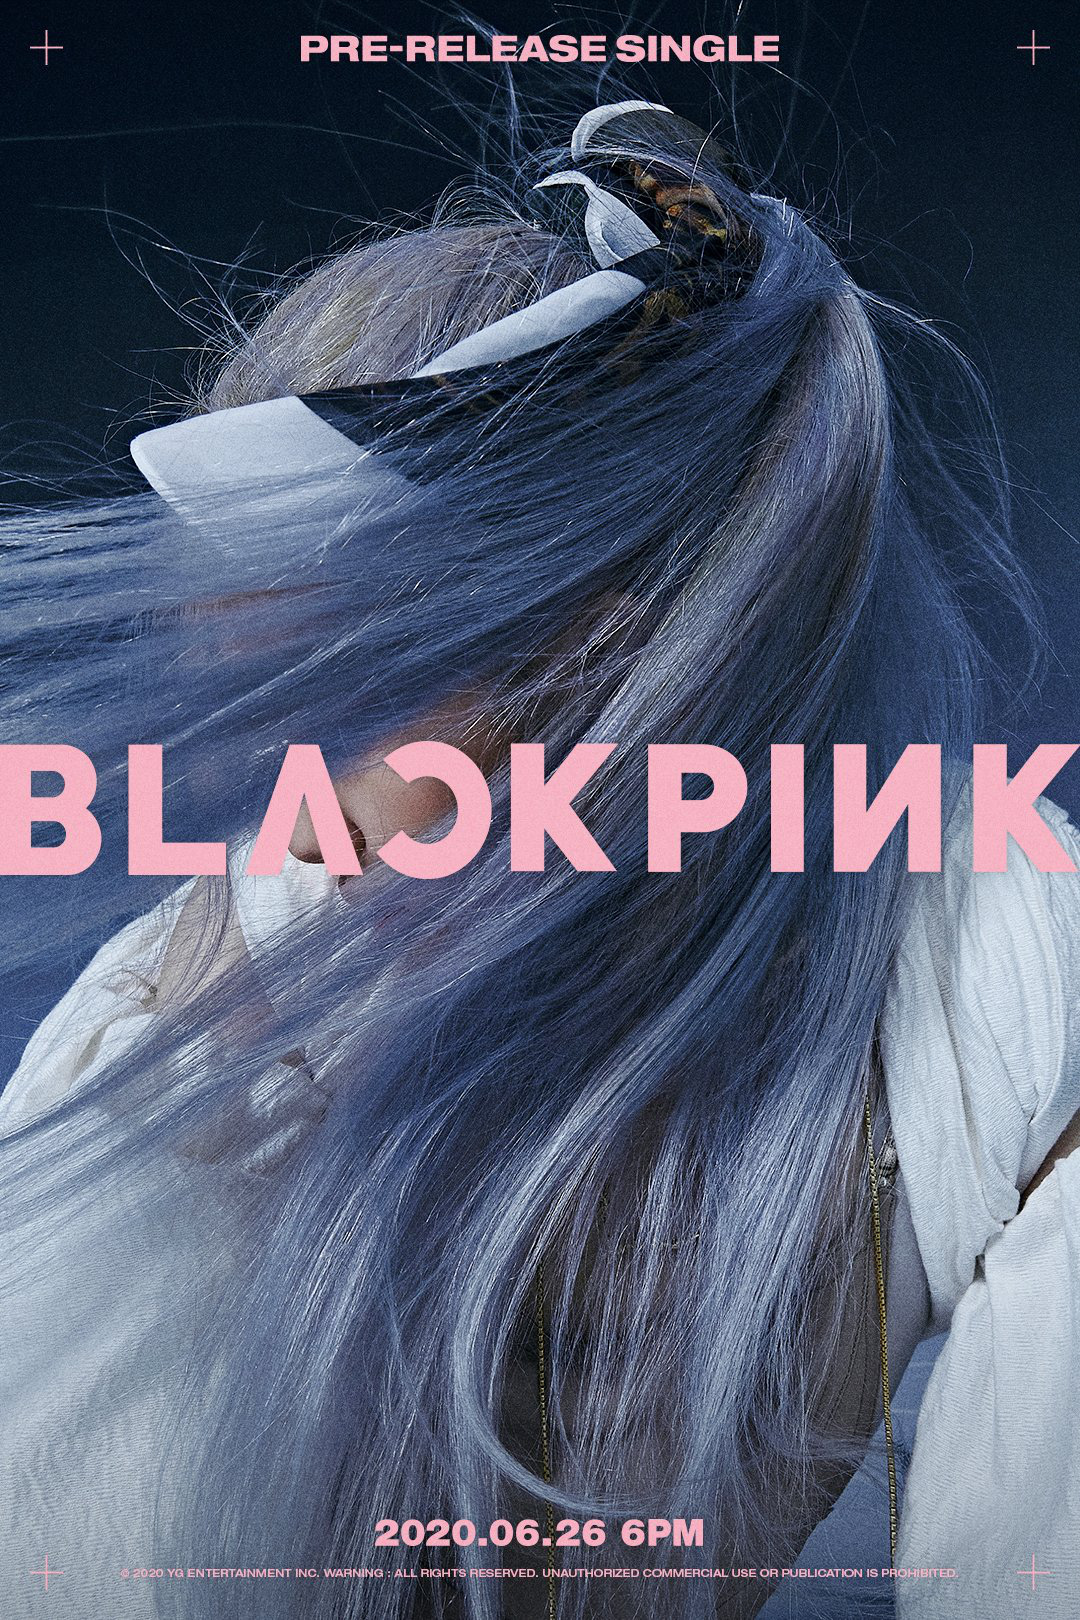 Bạn là fan hâm mộ của Blackpink? Hãy tìm hiểu thêm về nhóm nhạc này với bộ sưu tập ảnh poster đầy trẻ trung và đầy cá tính!